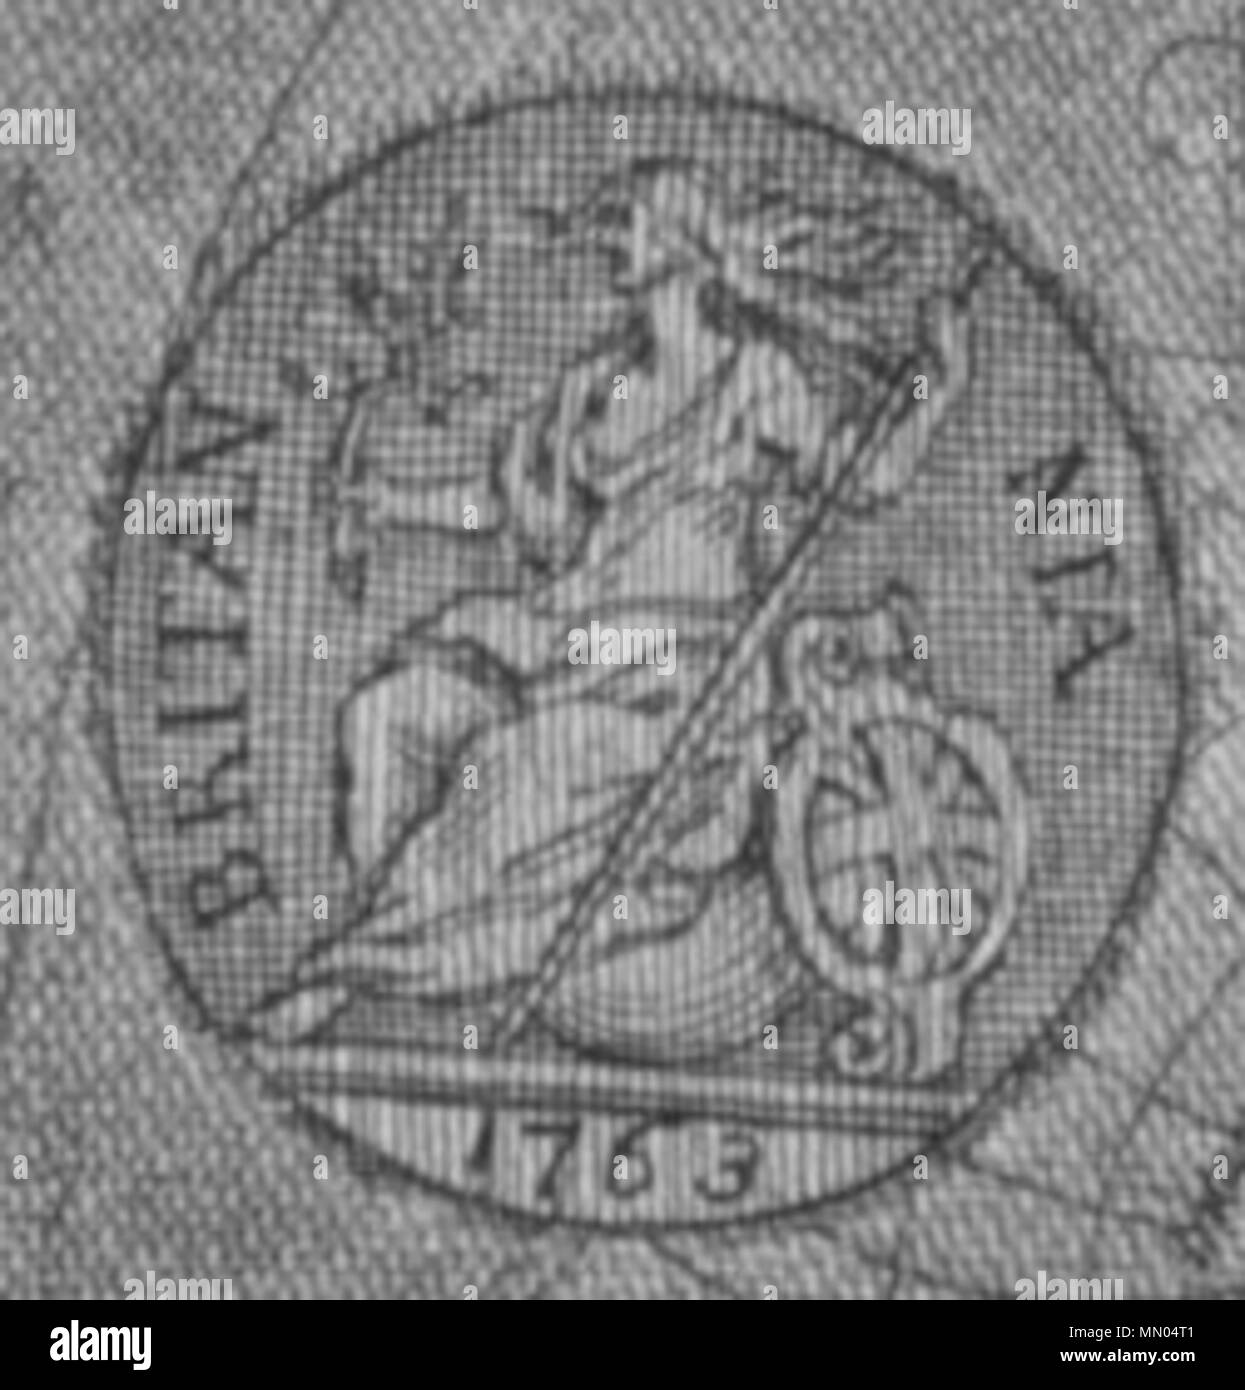 . Anglais : Britannia lent extrait de William Hogarth's Plate 8 : Dans l'asile d'une gravure Rake's Progress, après qu'il ait retouché en 1763. William Hogarth - UN Rake's Progress - Planche 8 - Dans la campagne agricole 1763 Britannia Madhouse Banque D'Images